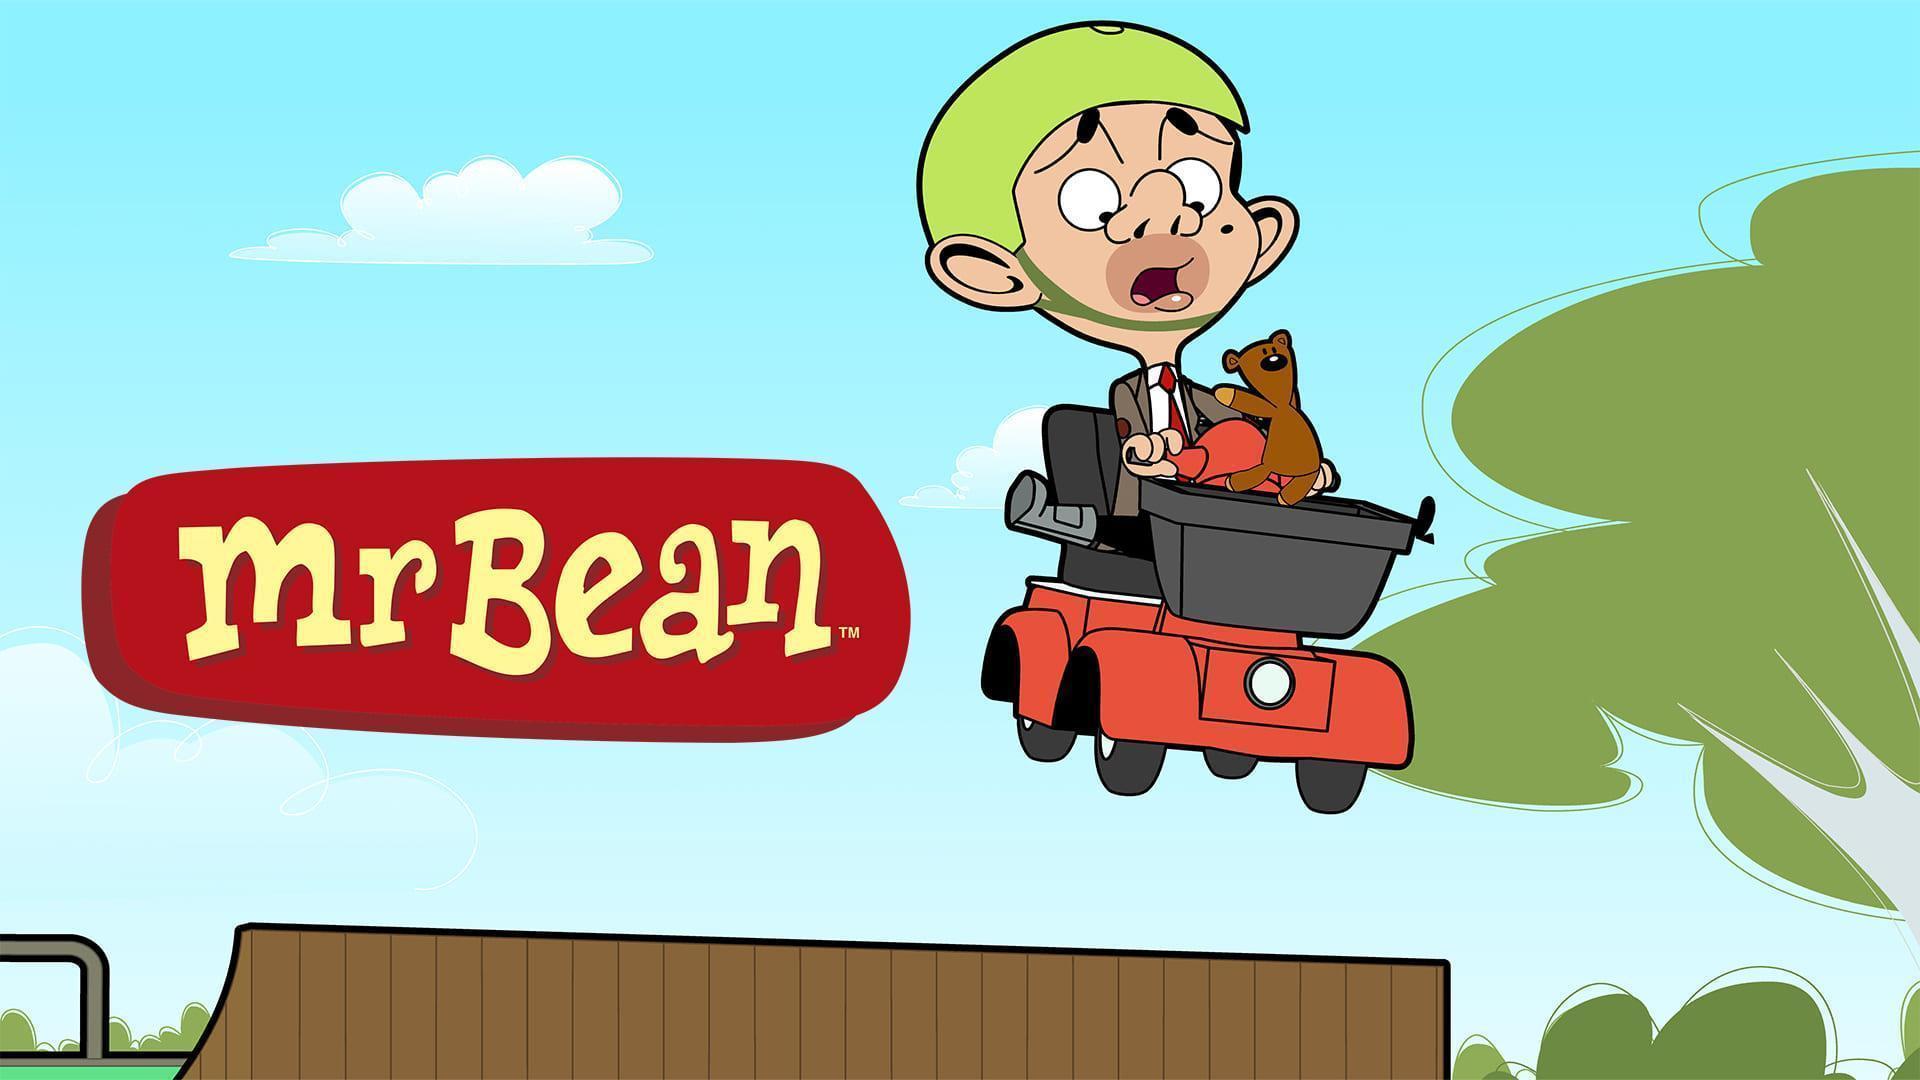 Mr Bean Cartoon Wallpapers  Top Free Mr Bean Cartoon Backgrounds   WallpaperAccess